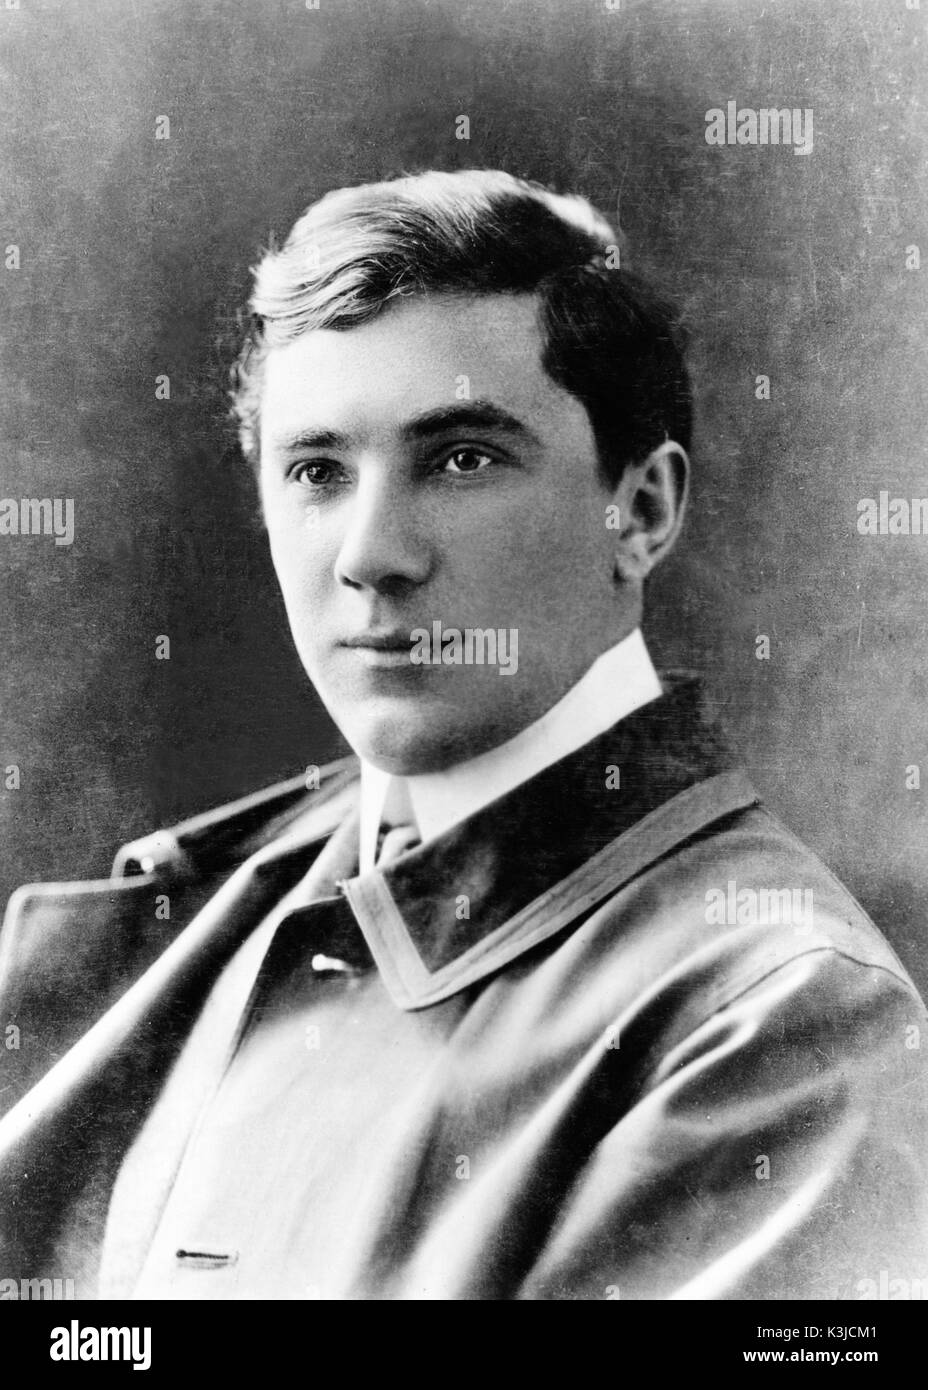 BELA LUGOSI österreichisch-ungarischen Schauspieler, 1900 Bela Lugosi Stockfoto